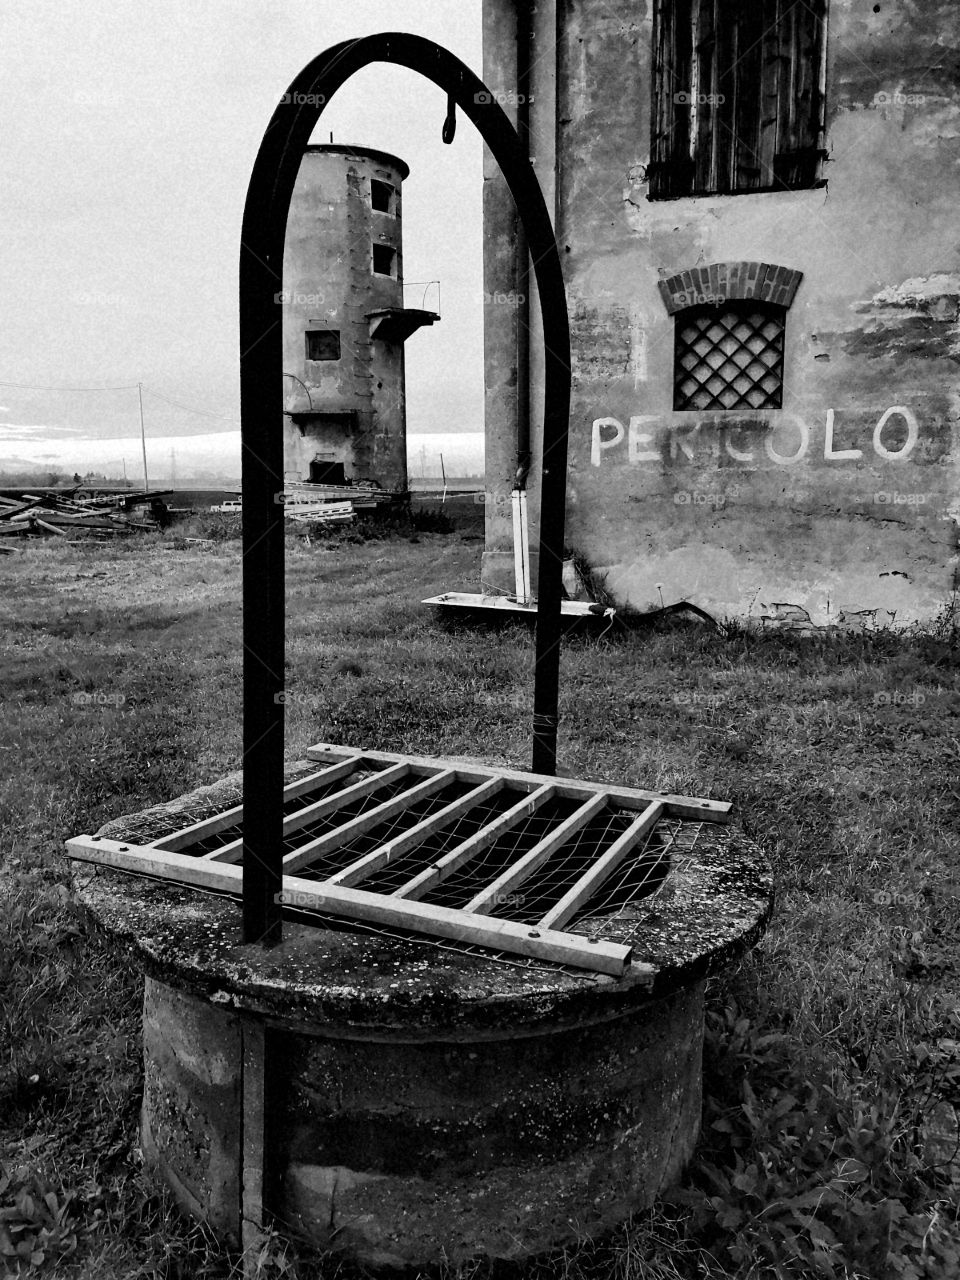 Abandoned well